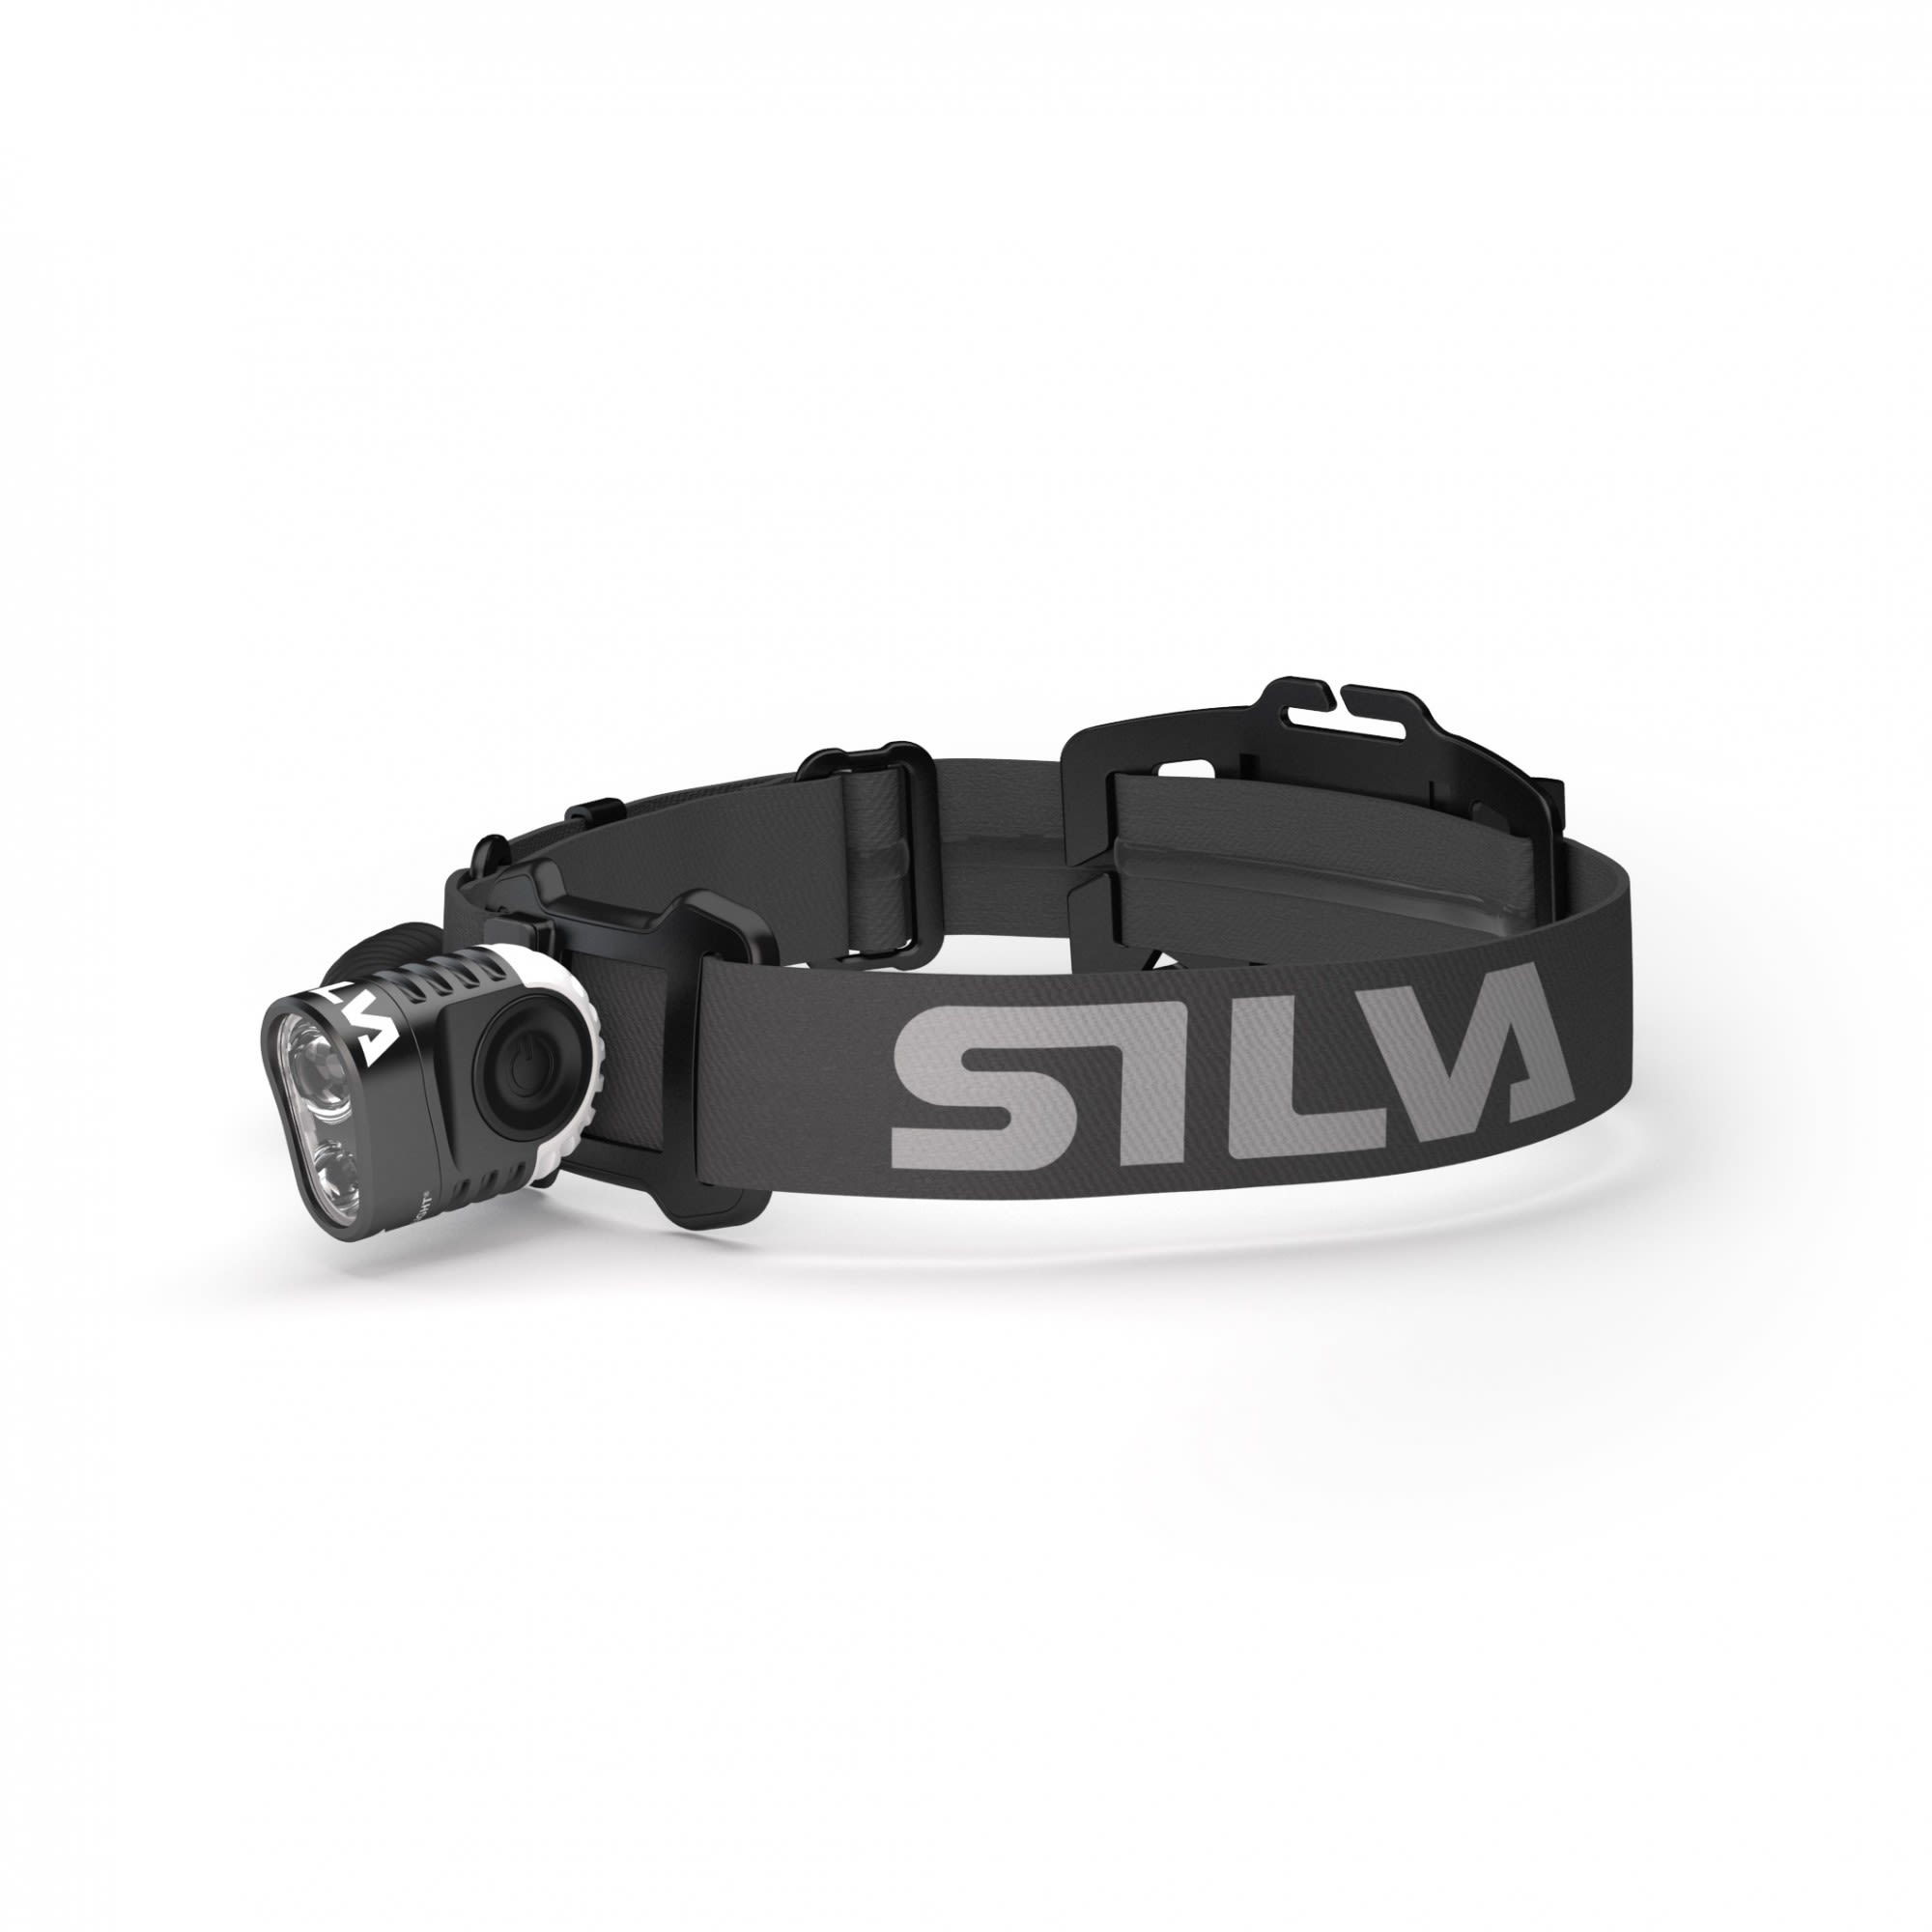 Silva Trail Speed 5X Schwarz- Stirnlampen- Grsse One Size - Farbe Black